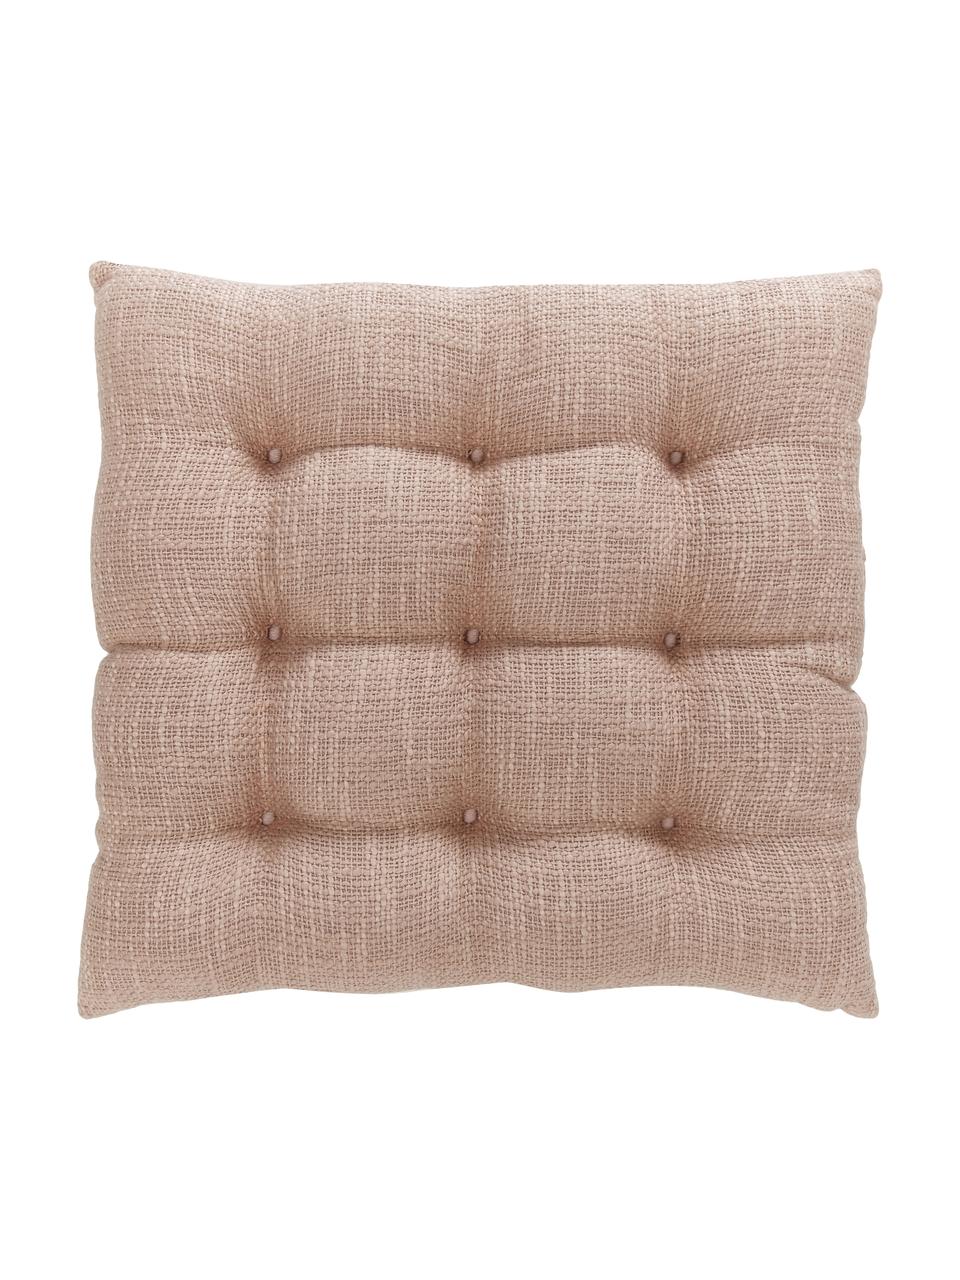 Cuscino sedia in cotone rosa Sasha, Rivestimento: 100% cotone, Rosa, Larg. 40 x Lung. 40 cm